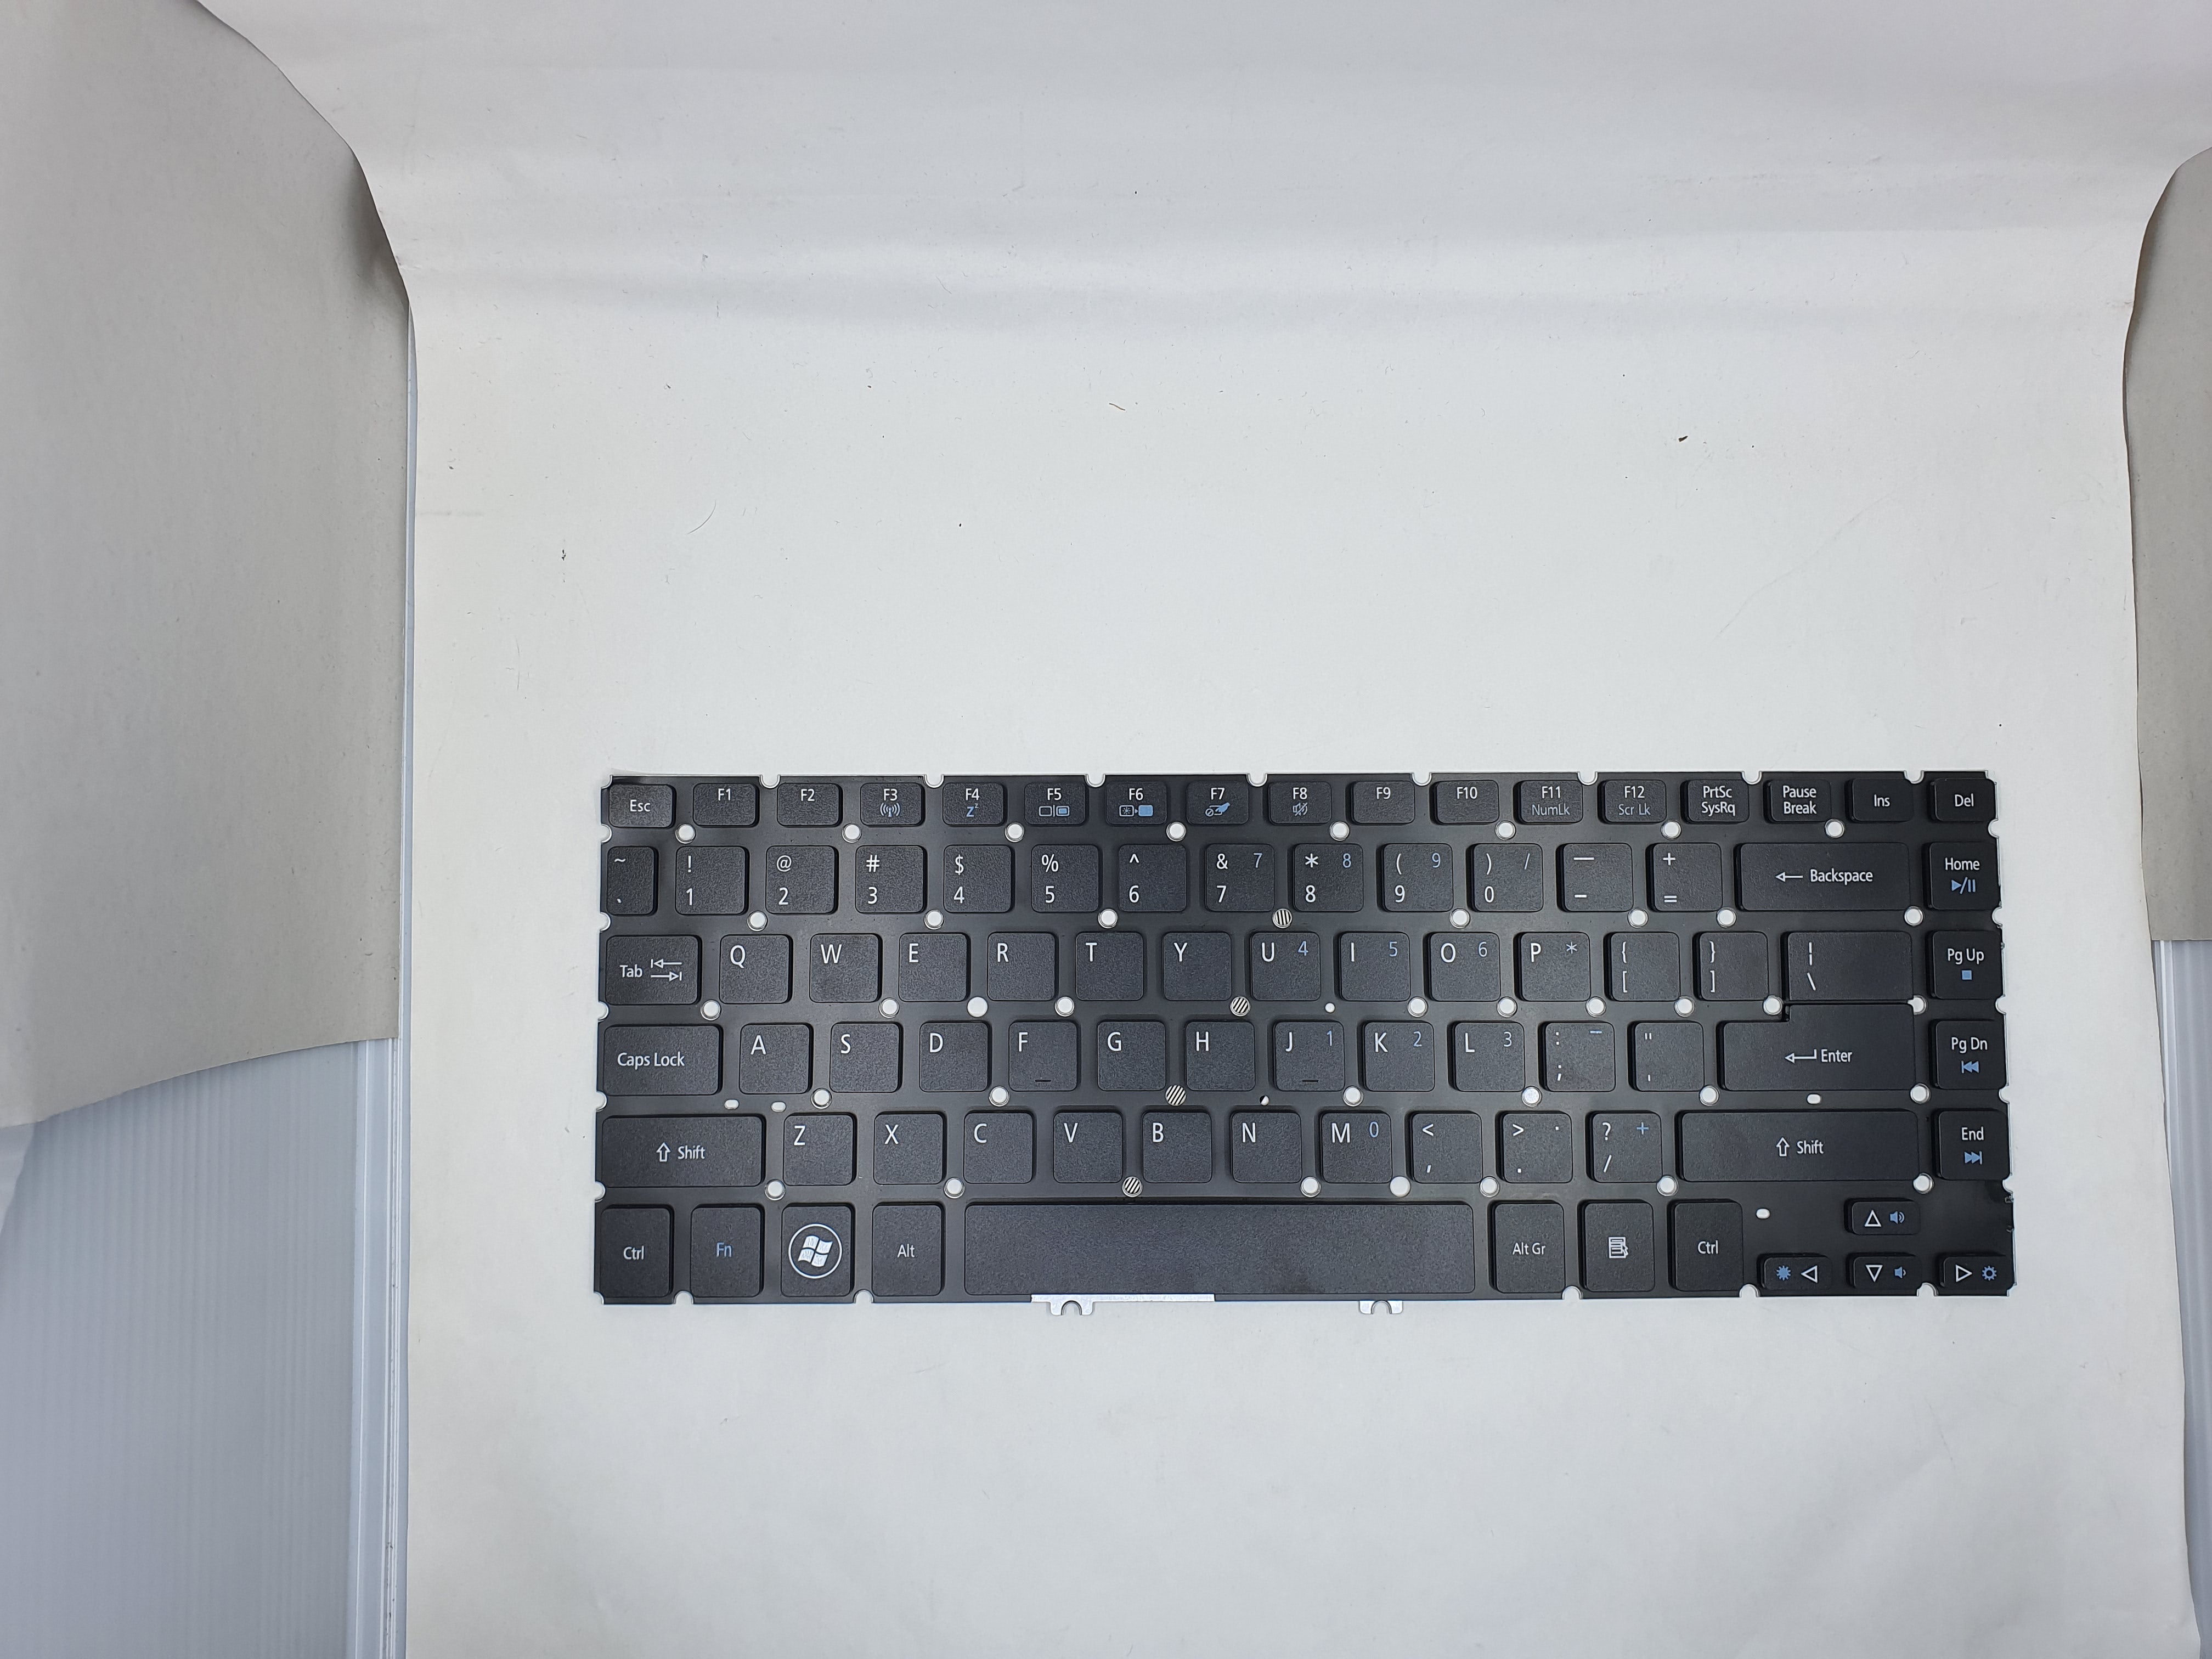 Acer Keyboard for Acer Aspire V5-471